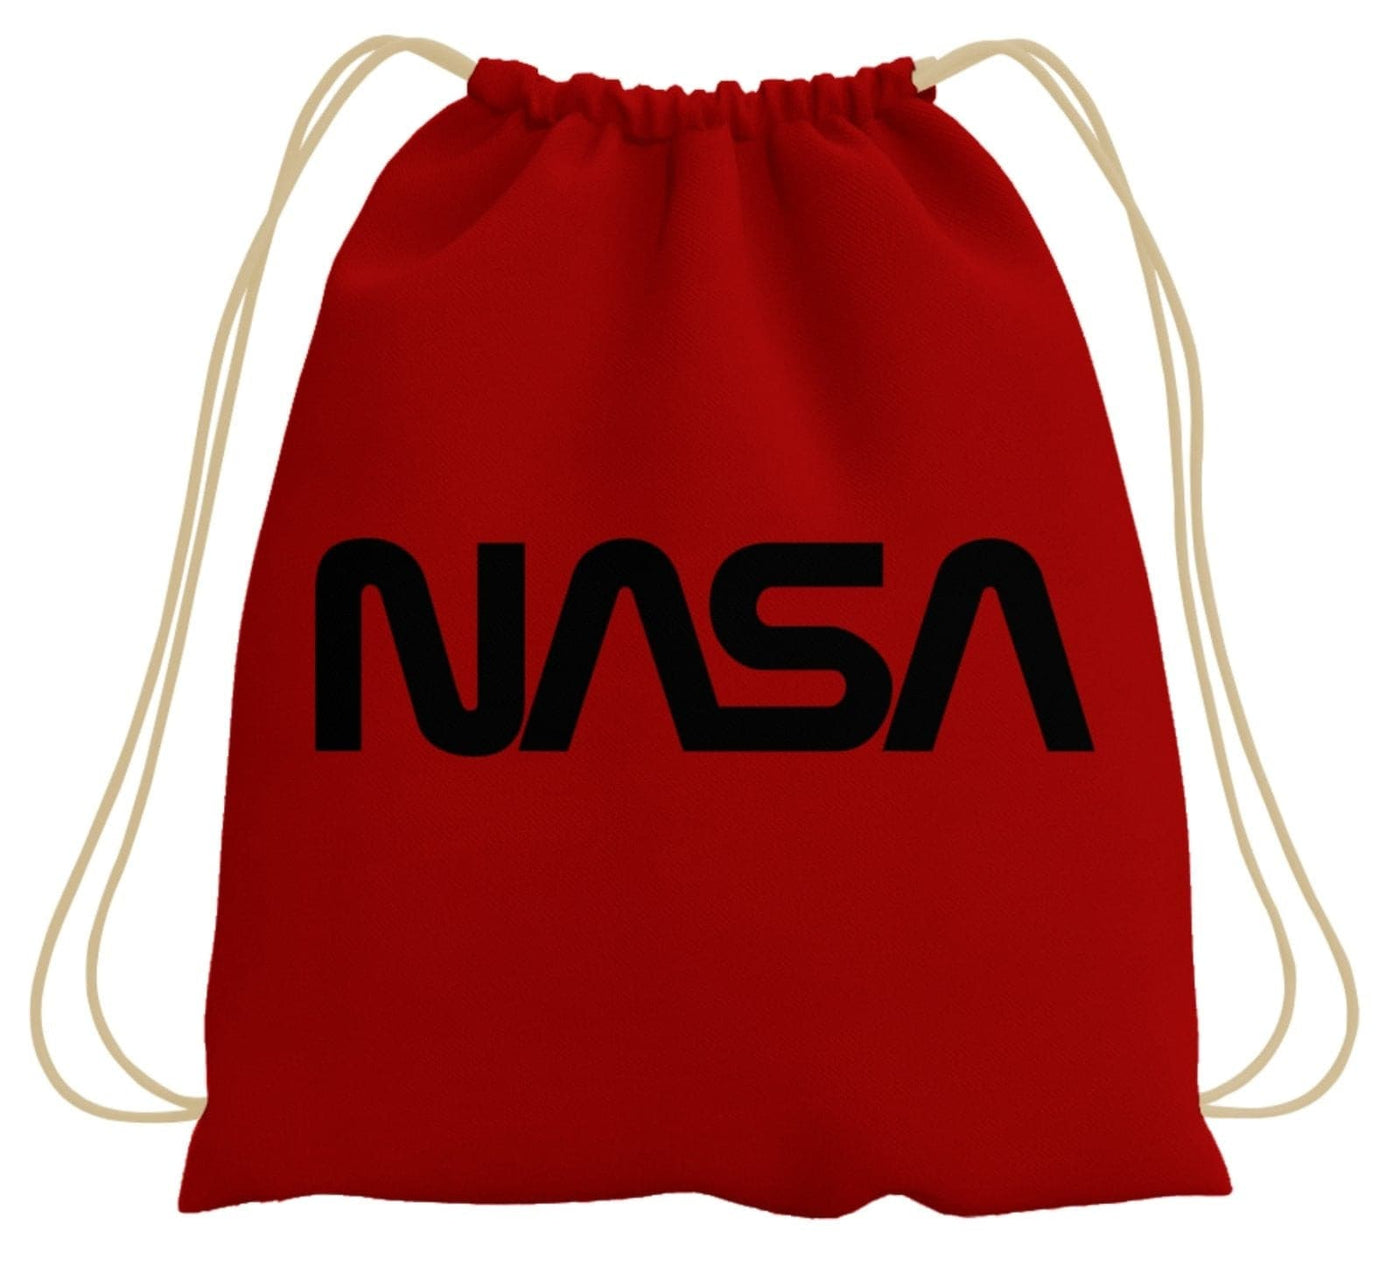 Bild: Turnbeutel - NASA Worm Logo Geschenkidee